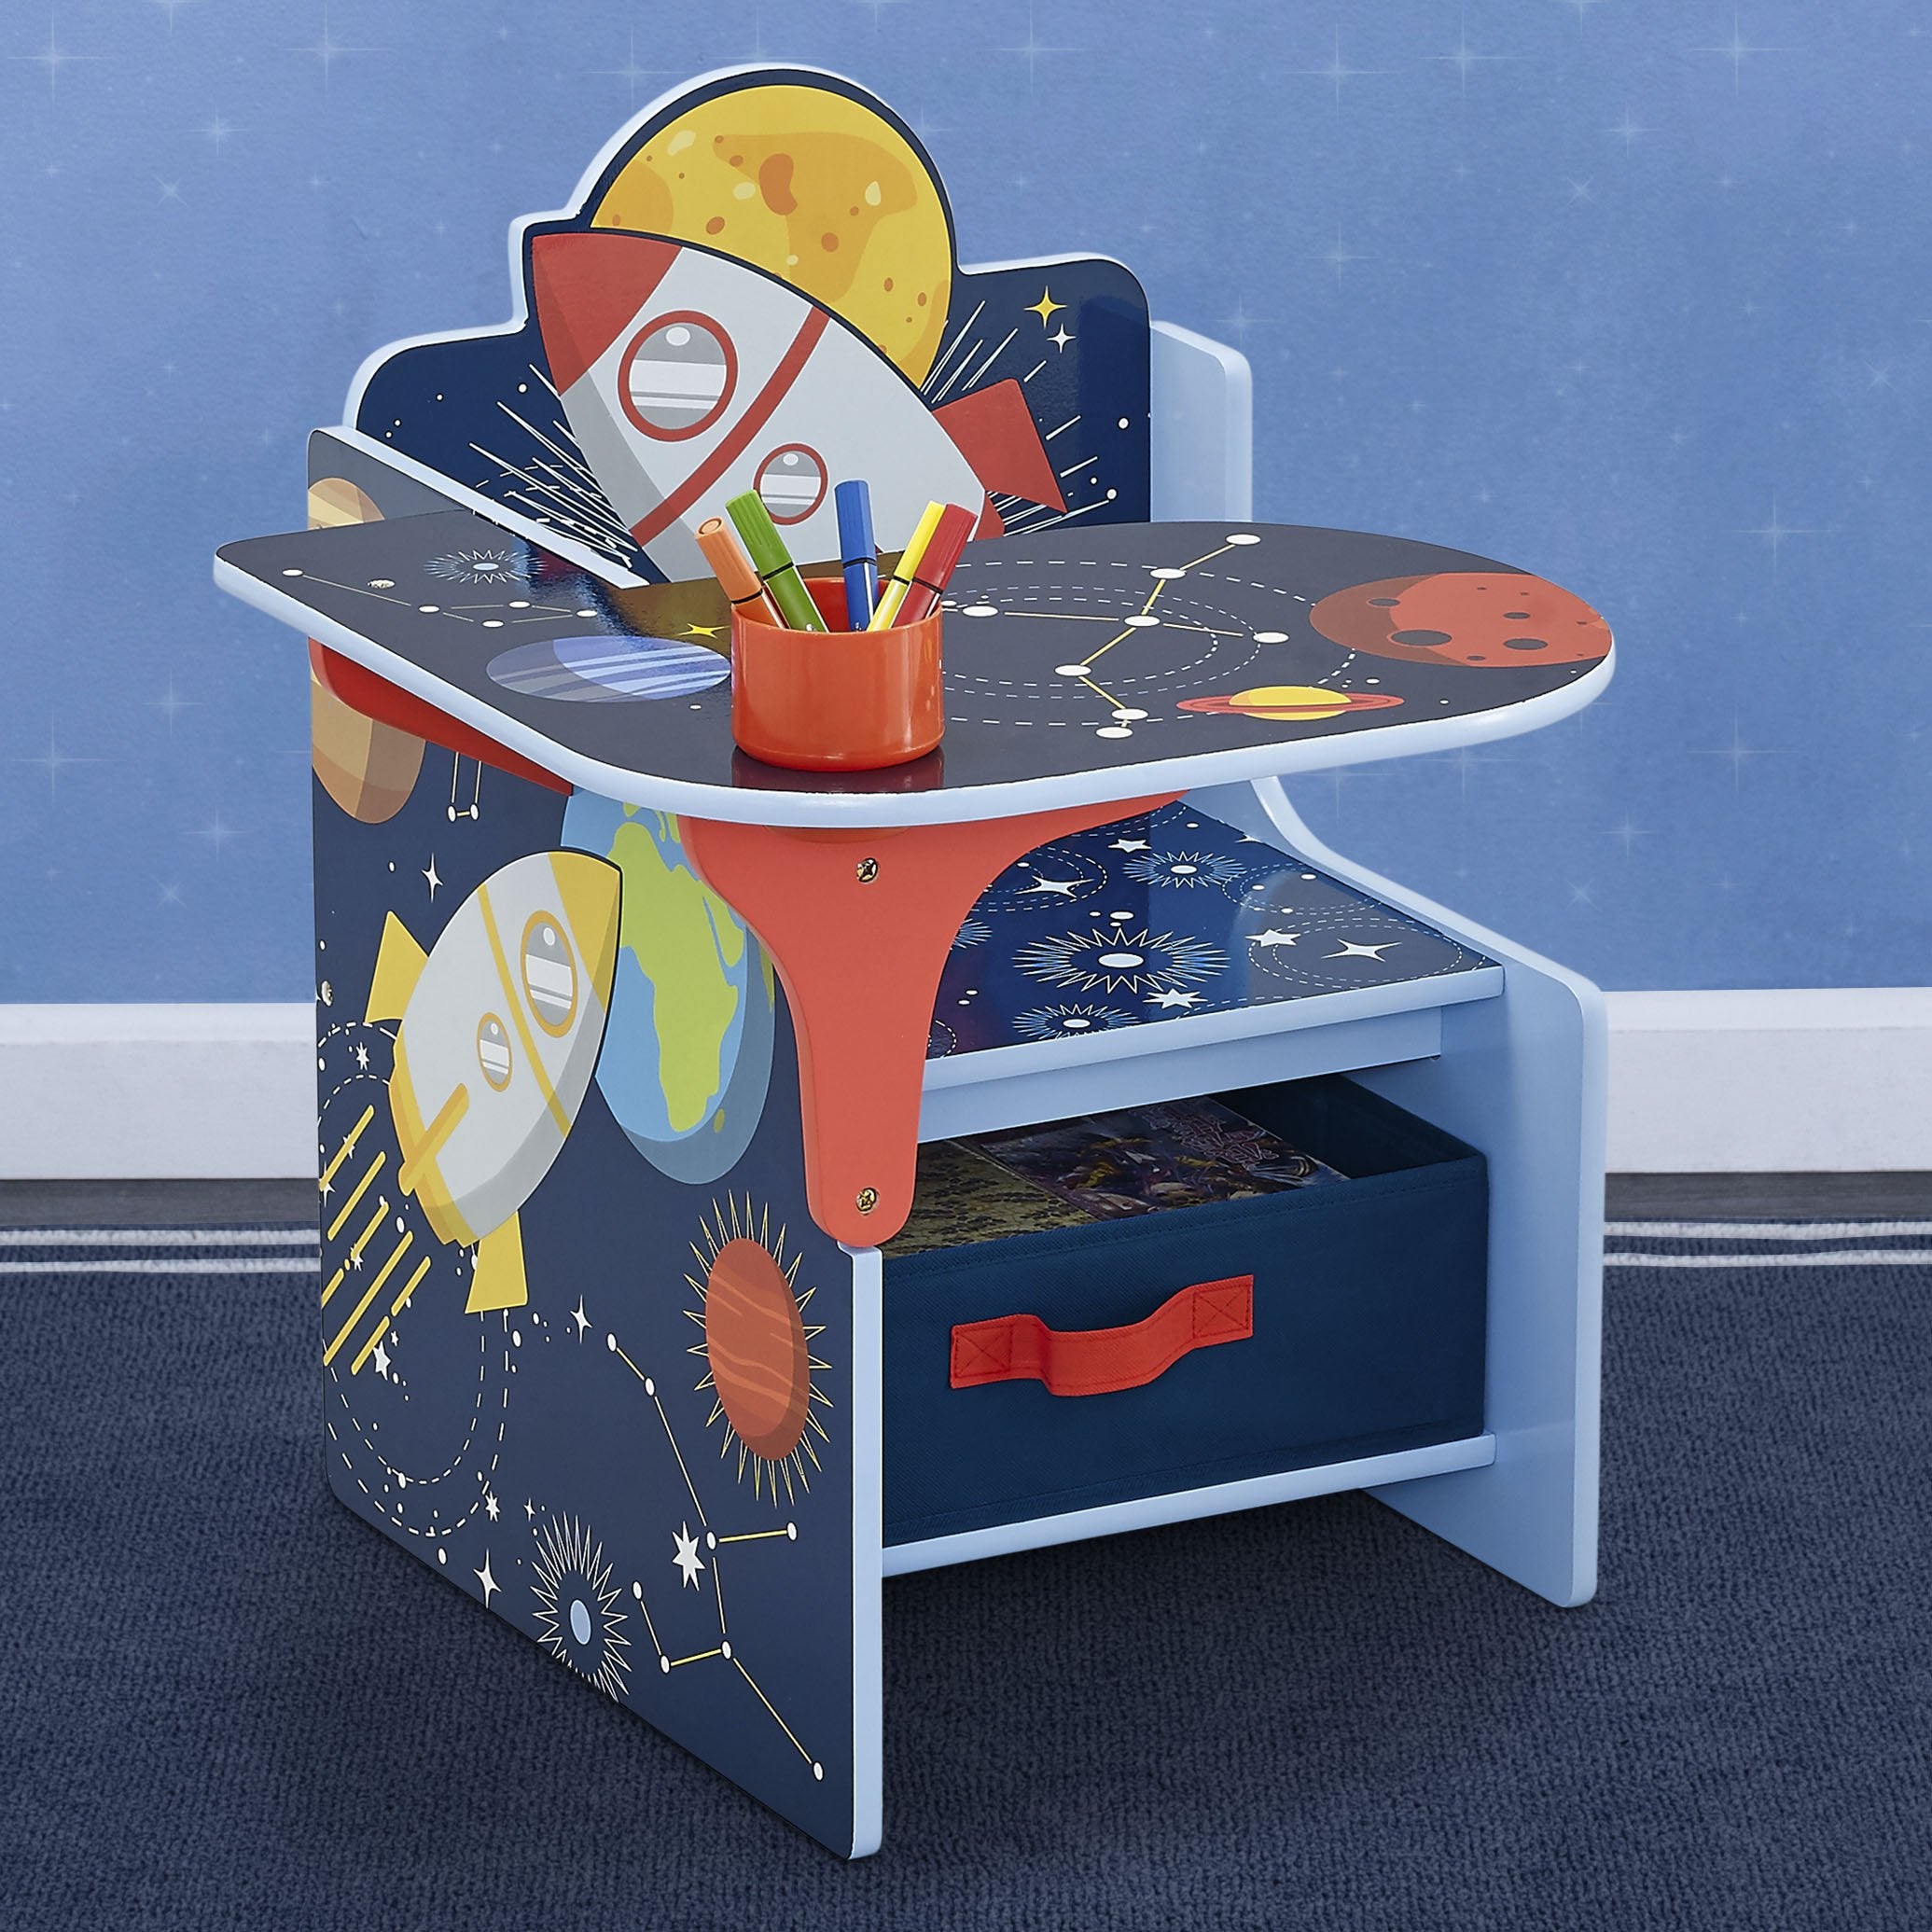 Space Adventures Chair Desk with Storage Bin - Delta Children